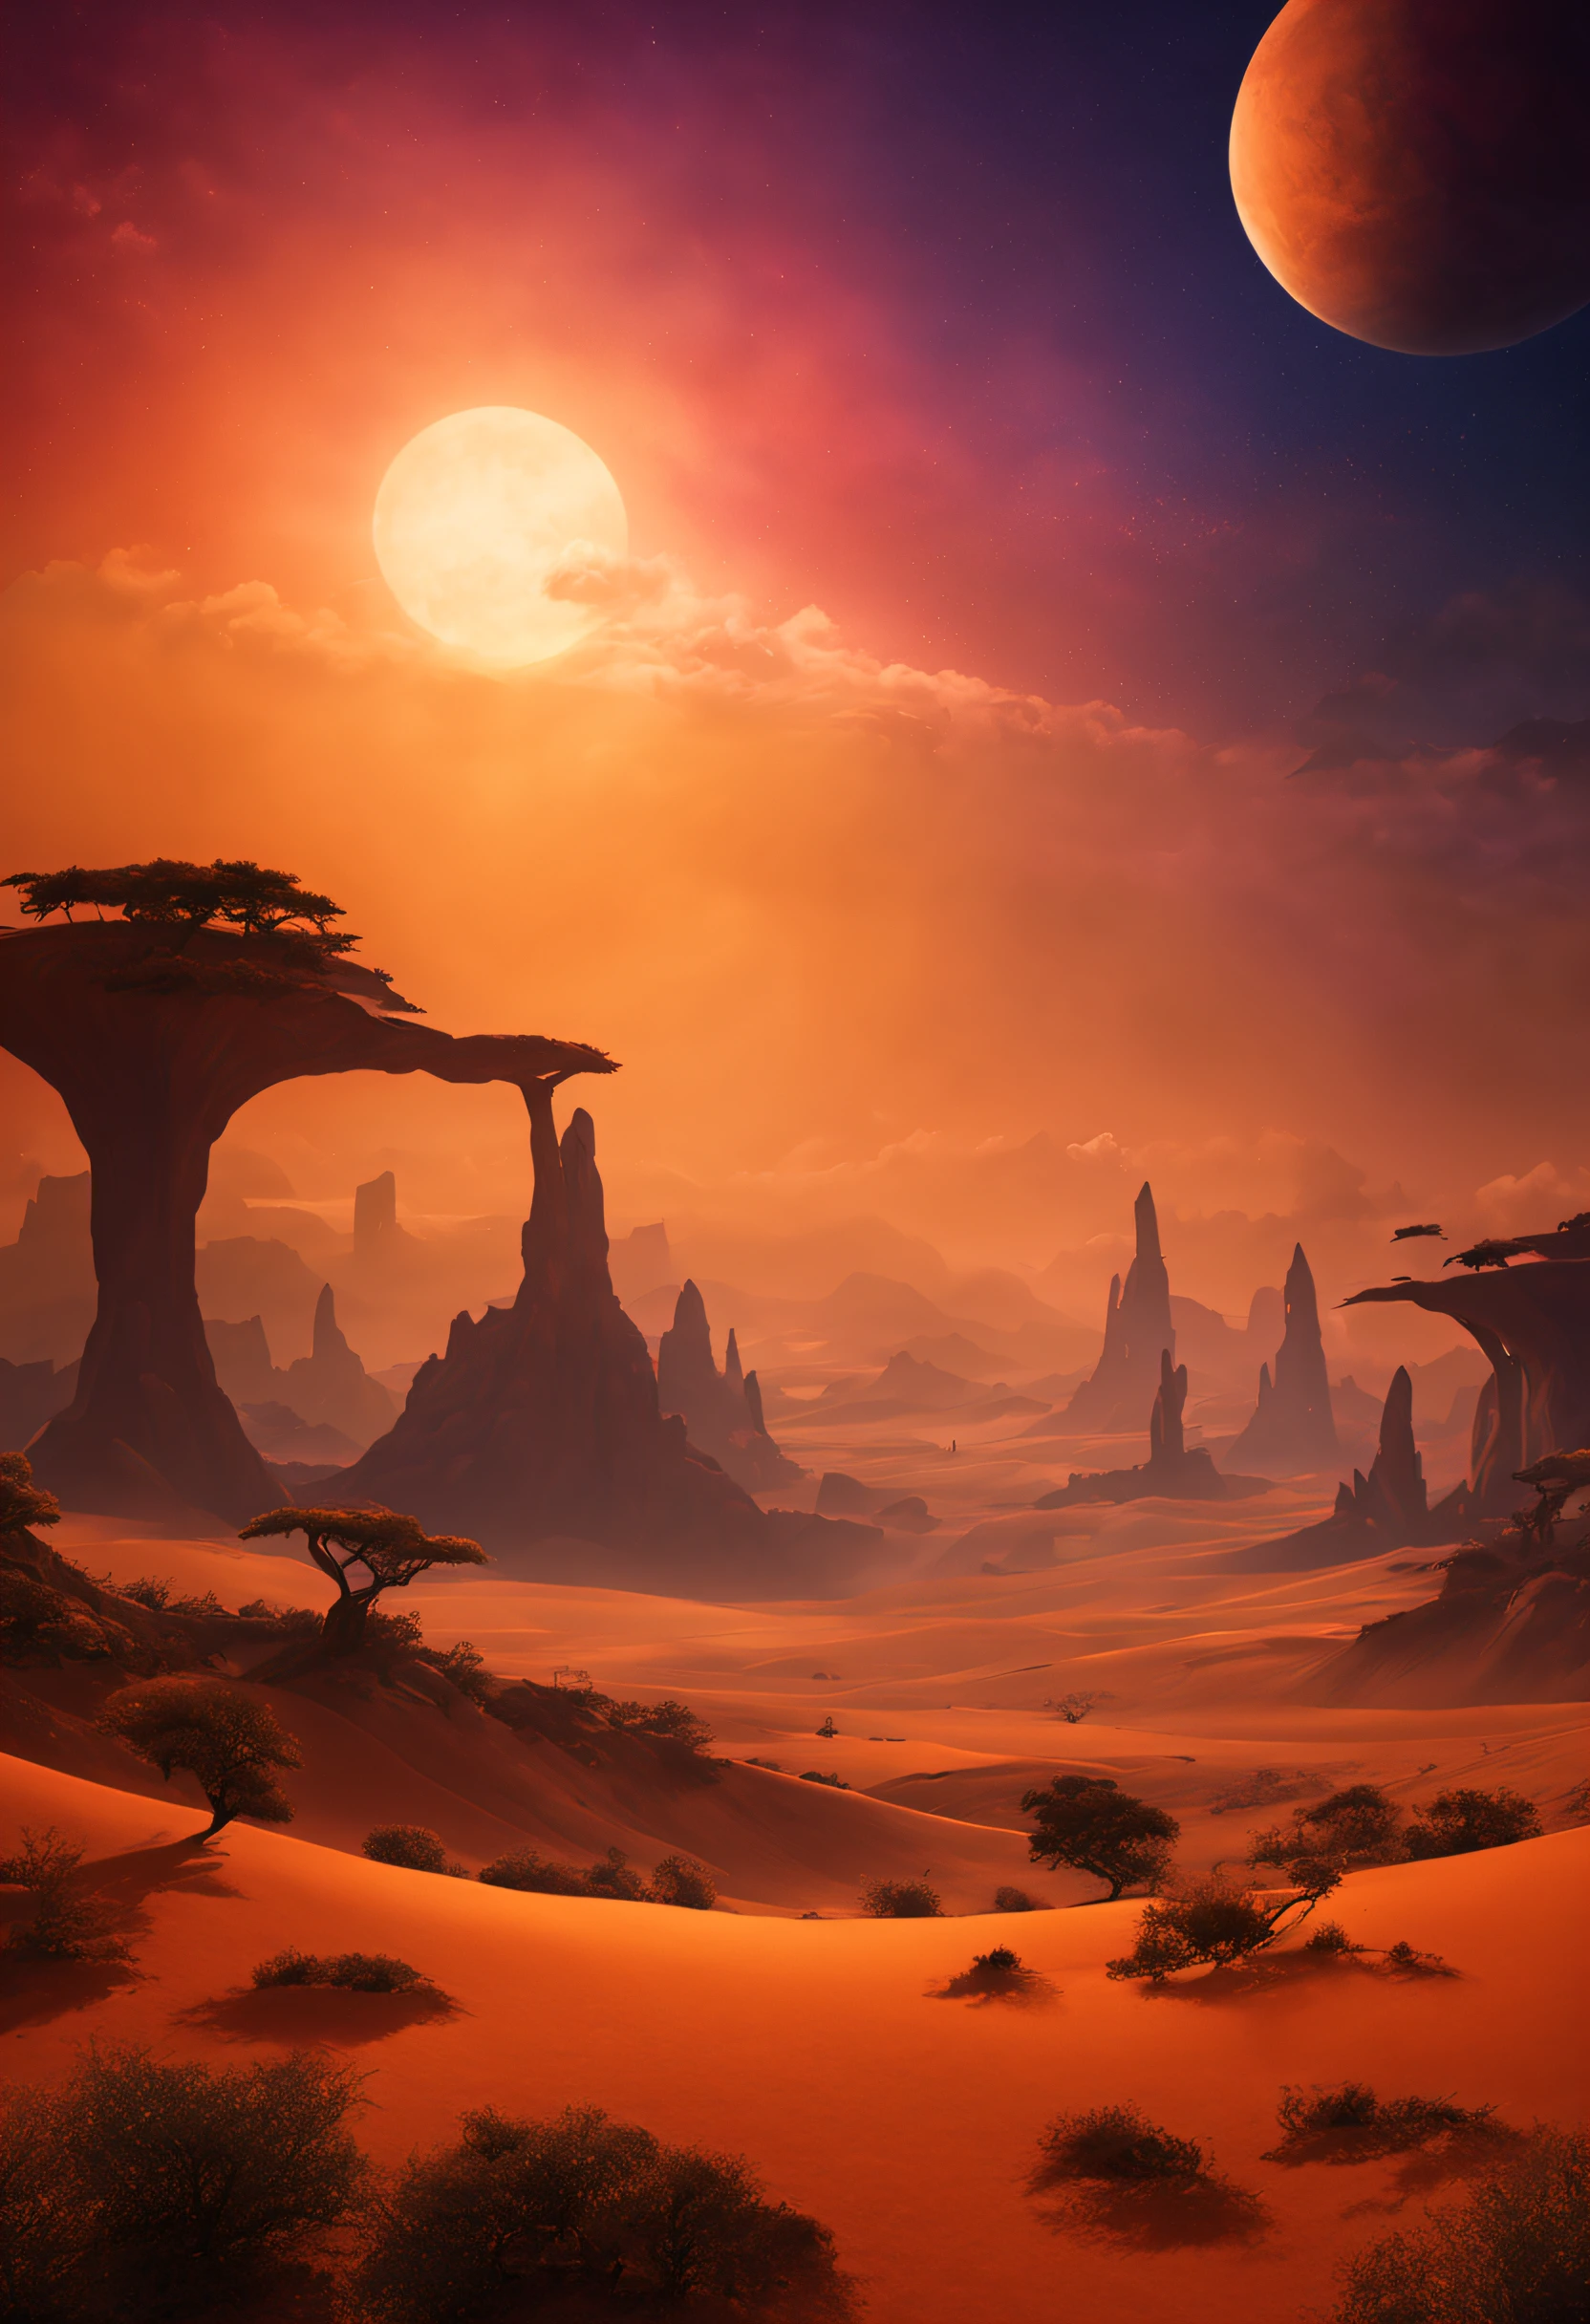 Uma bela e magnífica paisagem imaginária em um planeta exótico com muito pôr do sol colorido e um extraordinário vento colorido de poeira